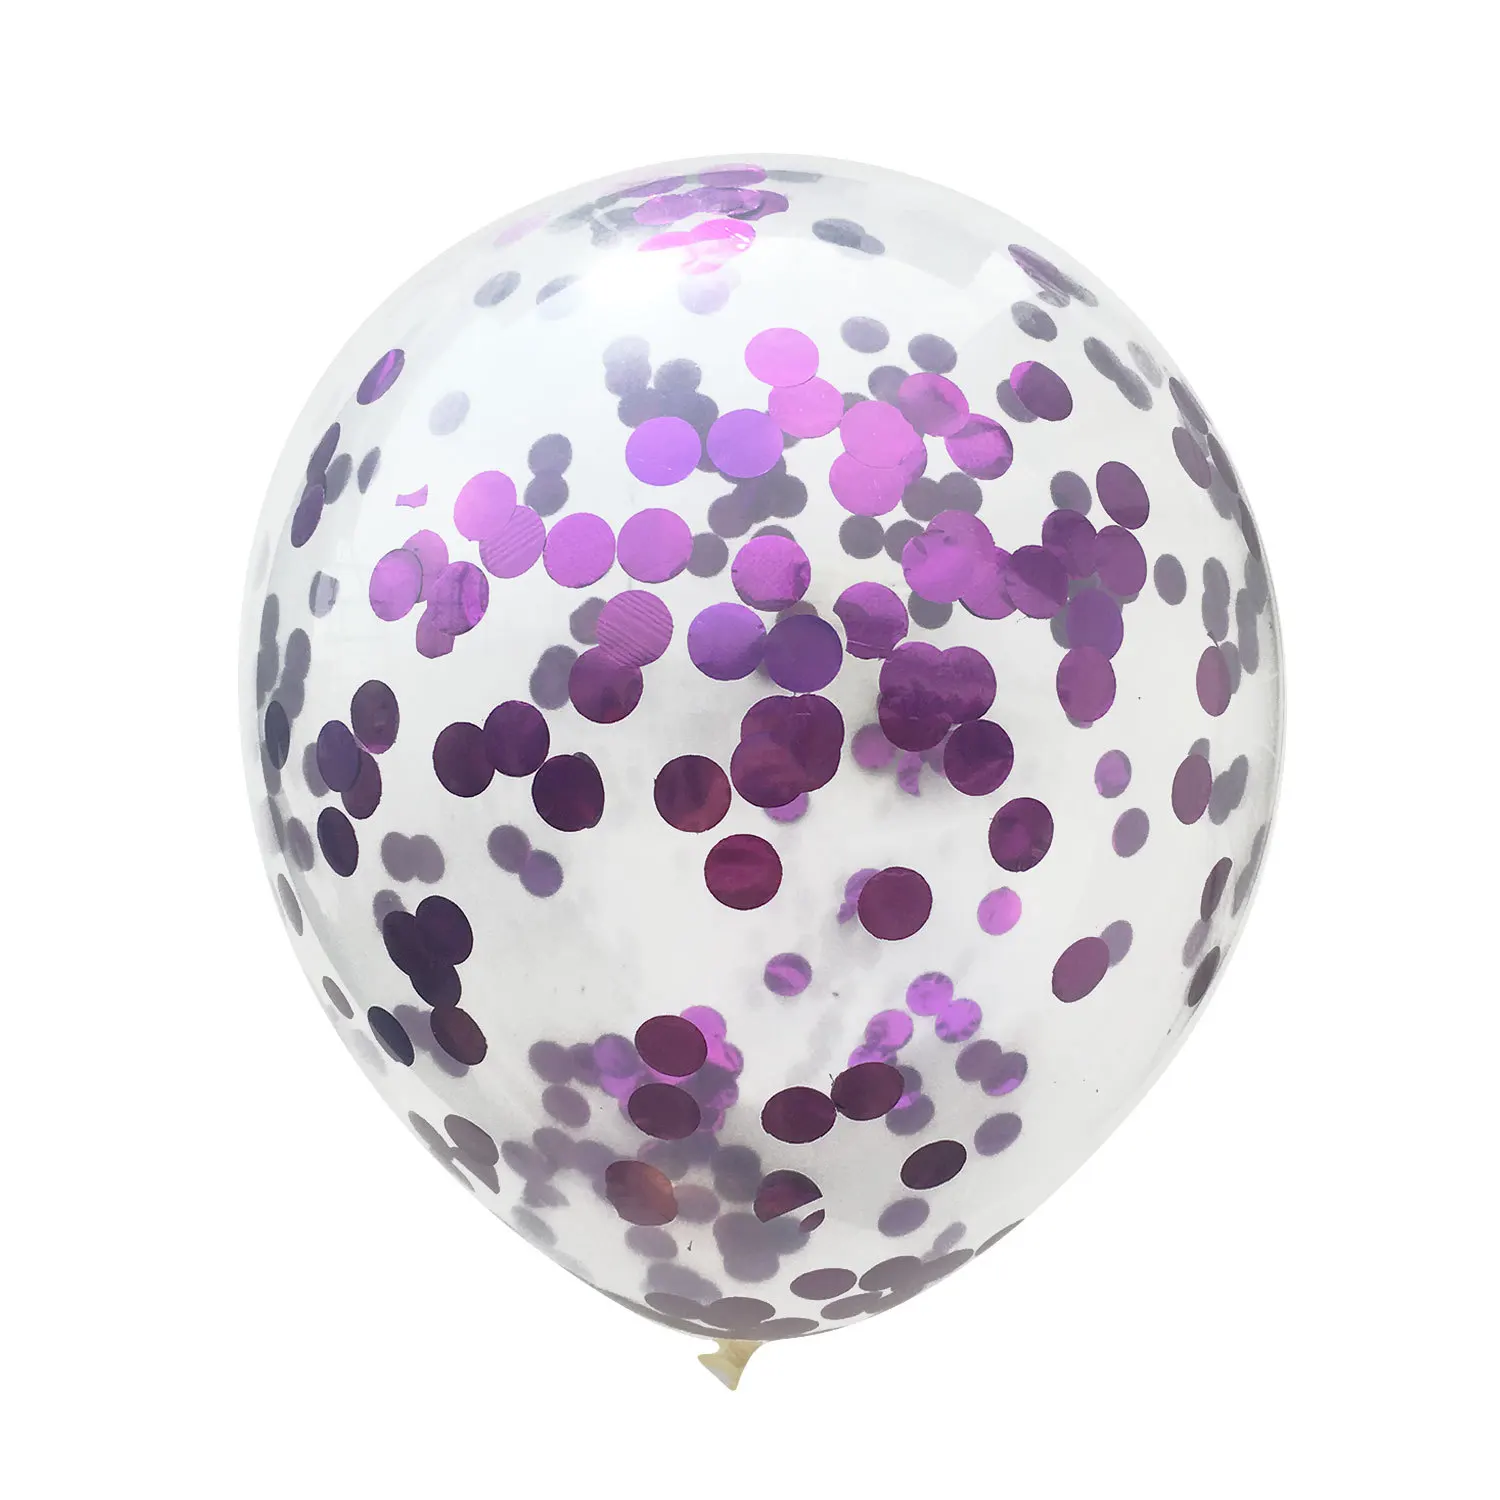 10 шт. 12 дюймов красочные латексные золотые конфетти из блесток воздушные шары для вечеринки для свадьбы День рождения, детский душ вечерние украшения - Цвет: Purple